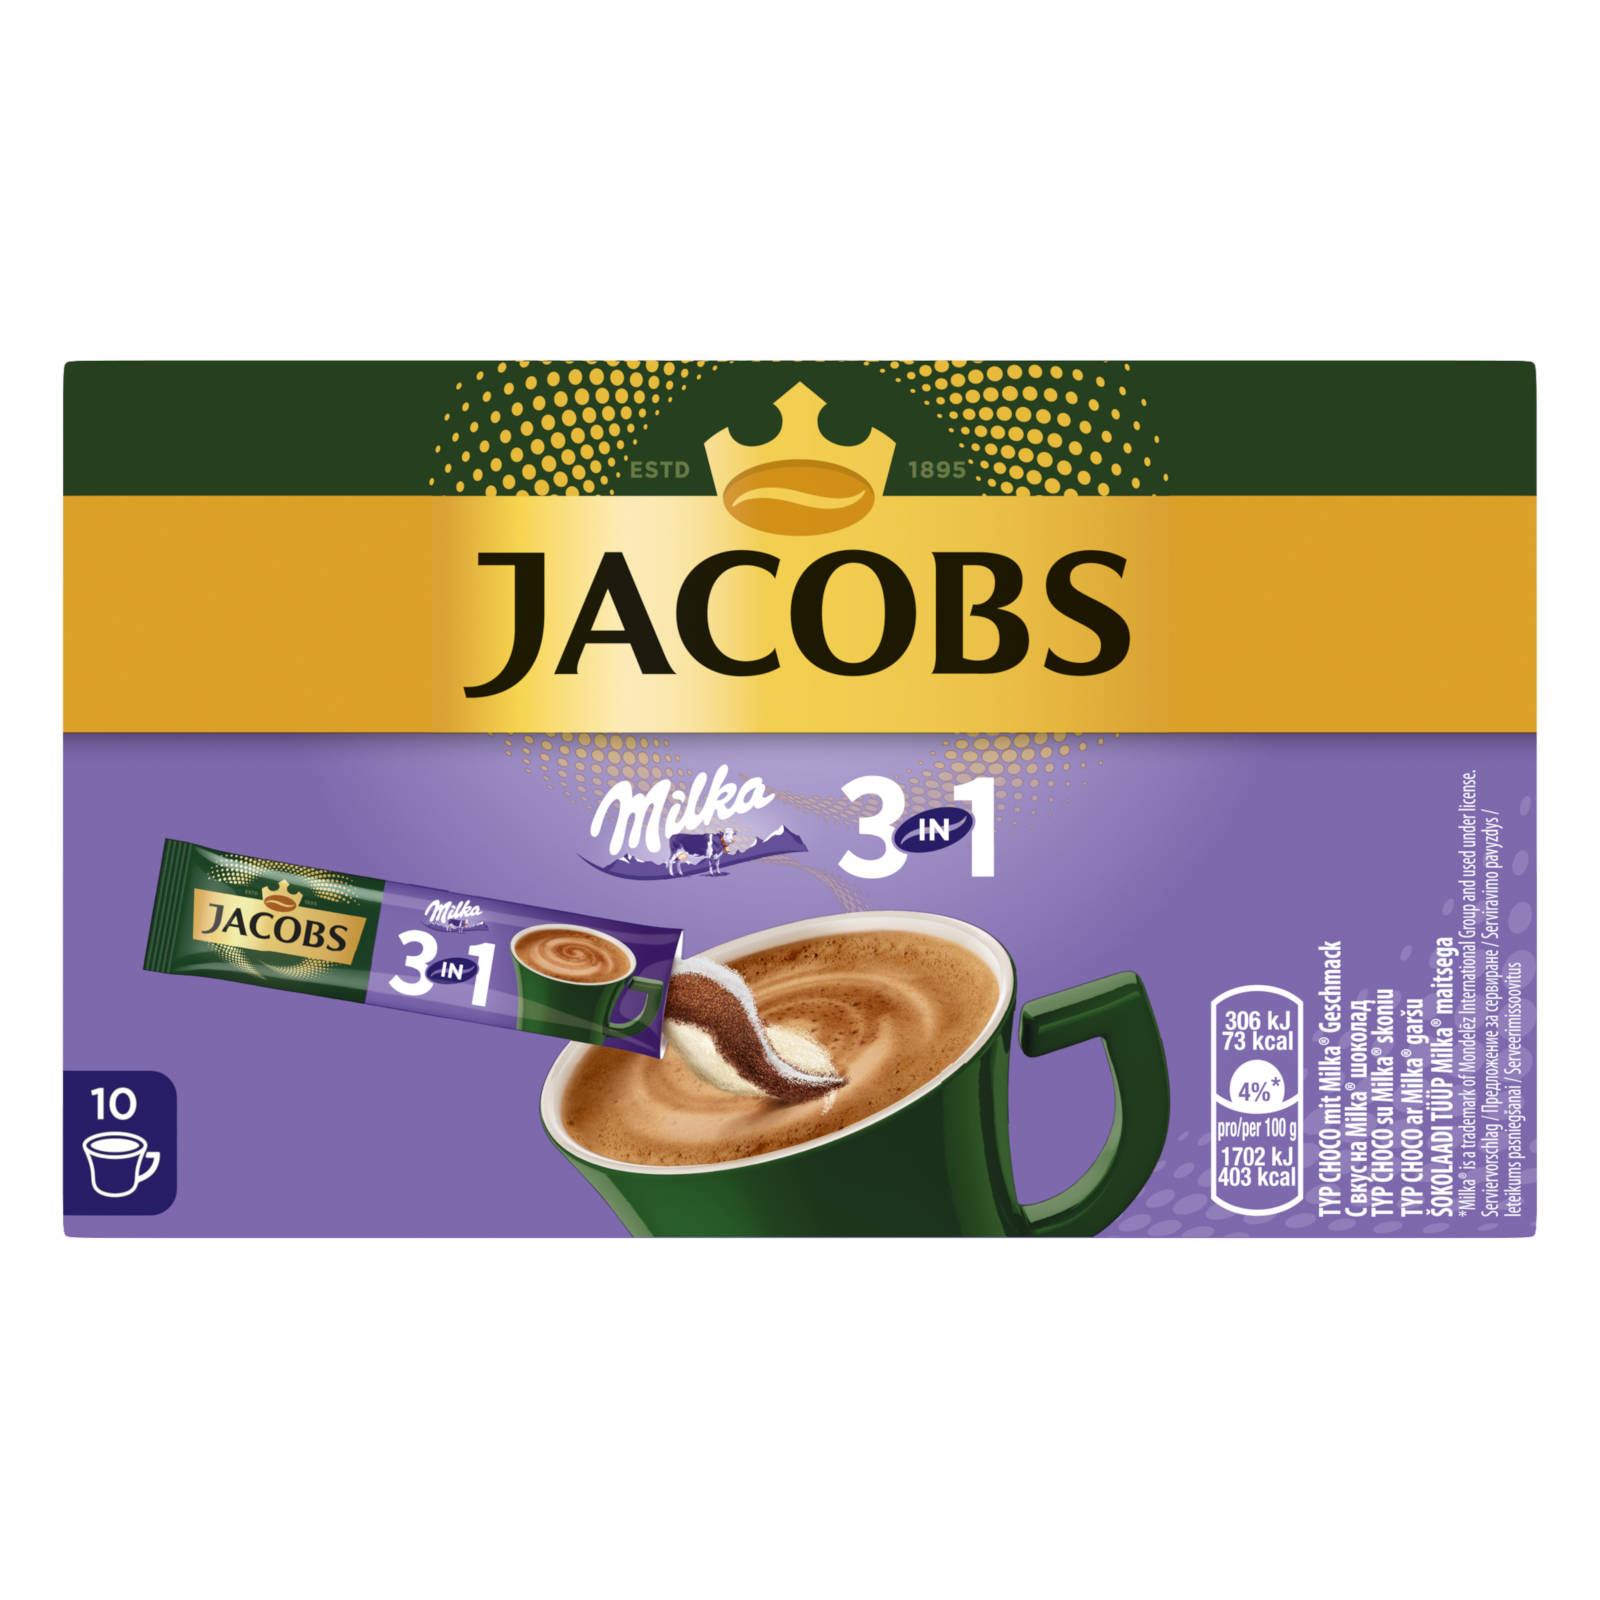 JACOBS 3in1 Milka®* 12 auflösen) 10 x (In Instantkaffee Getränke Sticks heißem Wasser